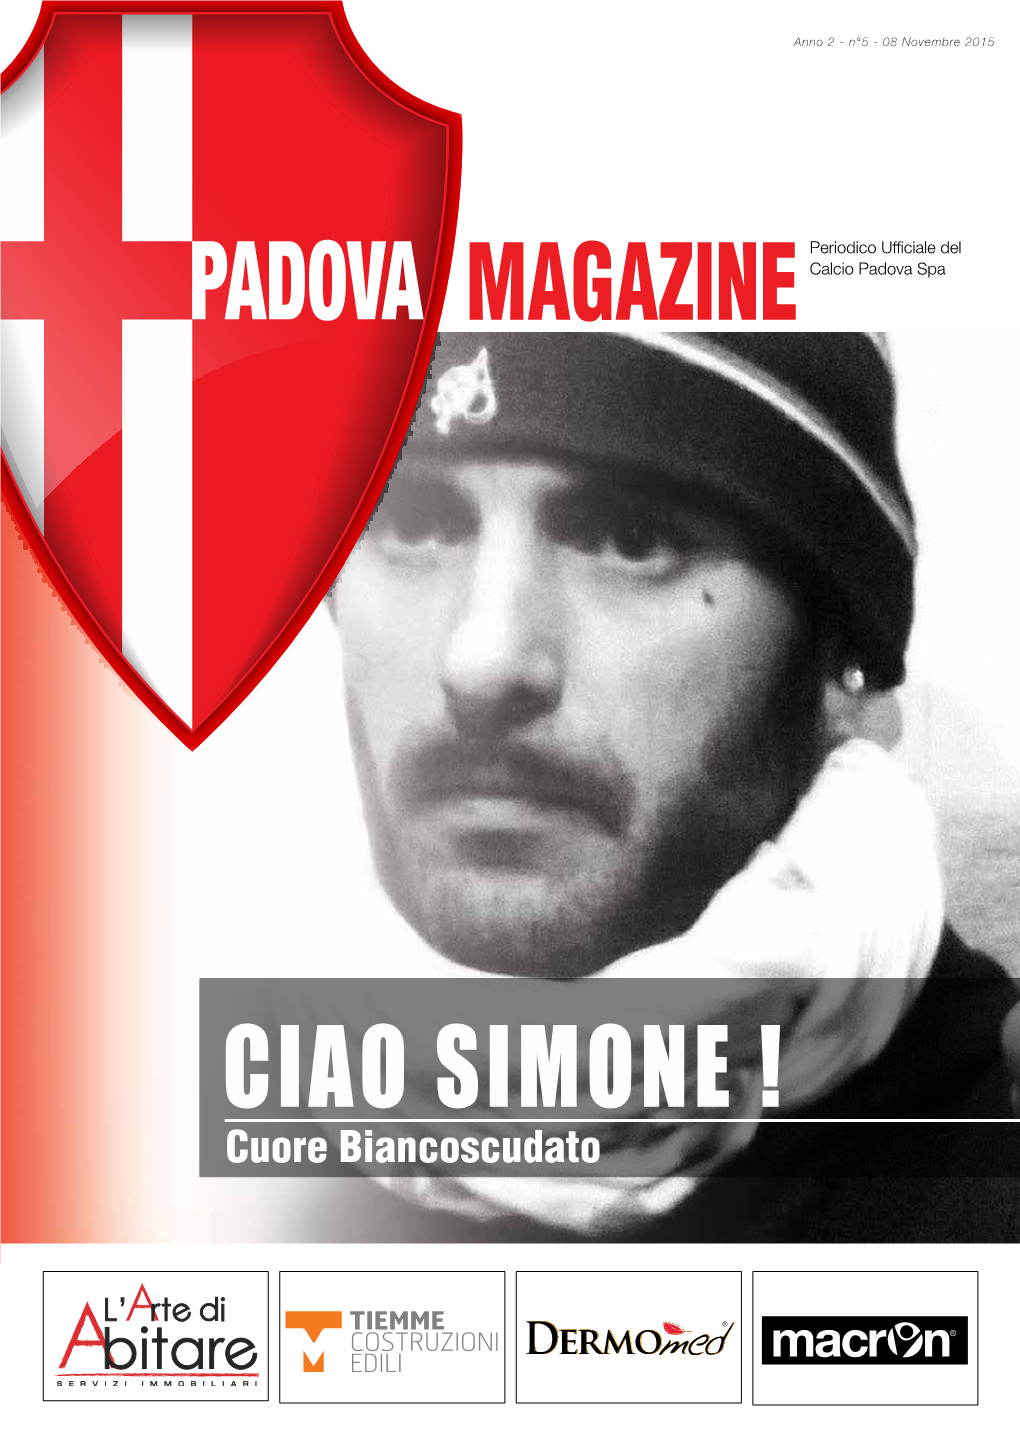 Cuore Biancoscudato LUTTO in TRIBUNA FATTORI I Tifosi Del Calcio Padova Piangono Simone Lovison, “El Rulo” Era Uno Di Noi”